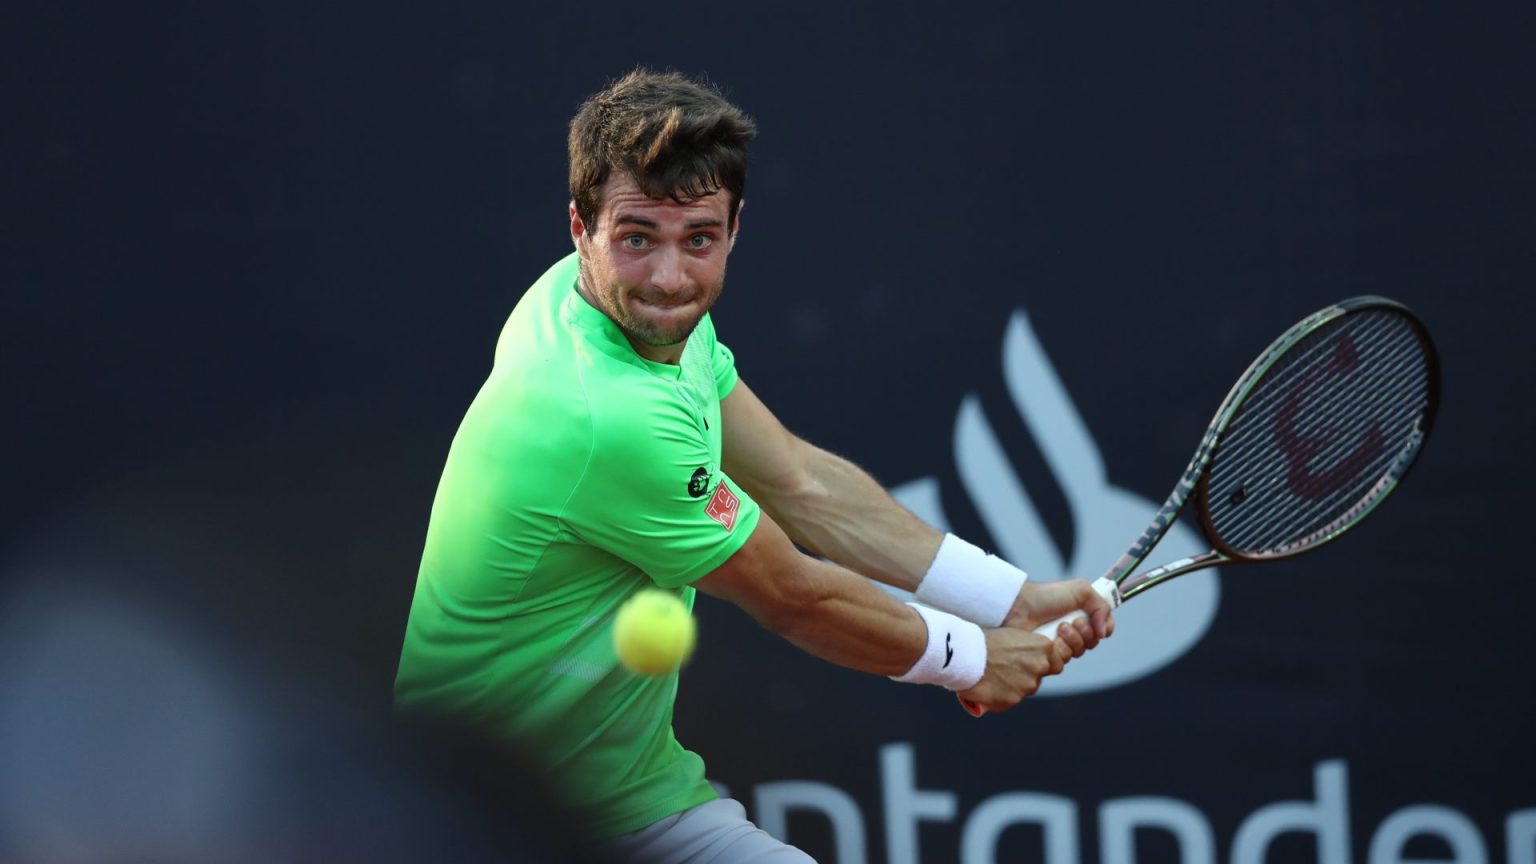 El tenista español Pedro Martínez levanta en Chile su primer título ATP